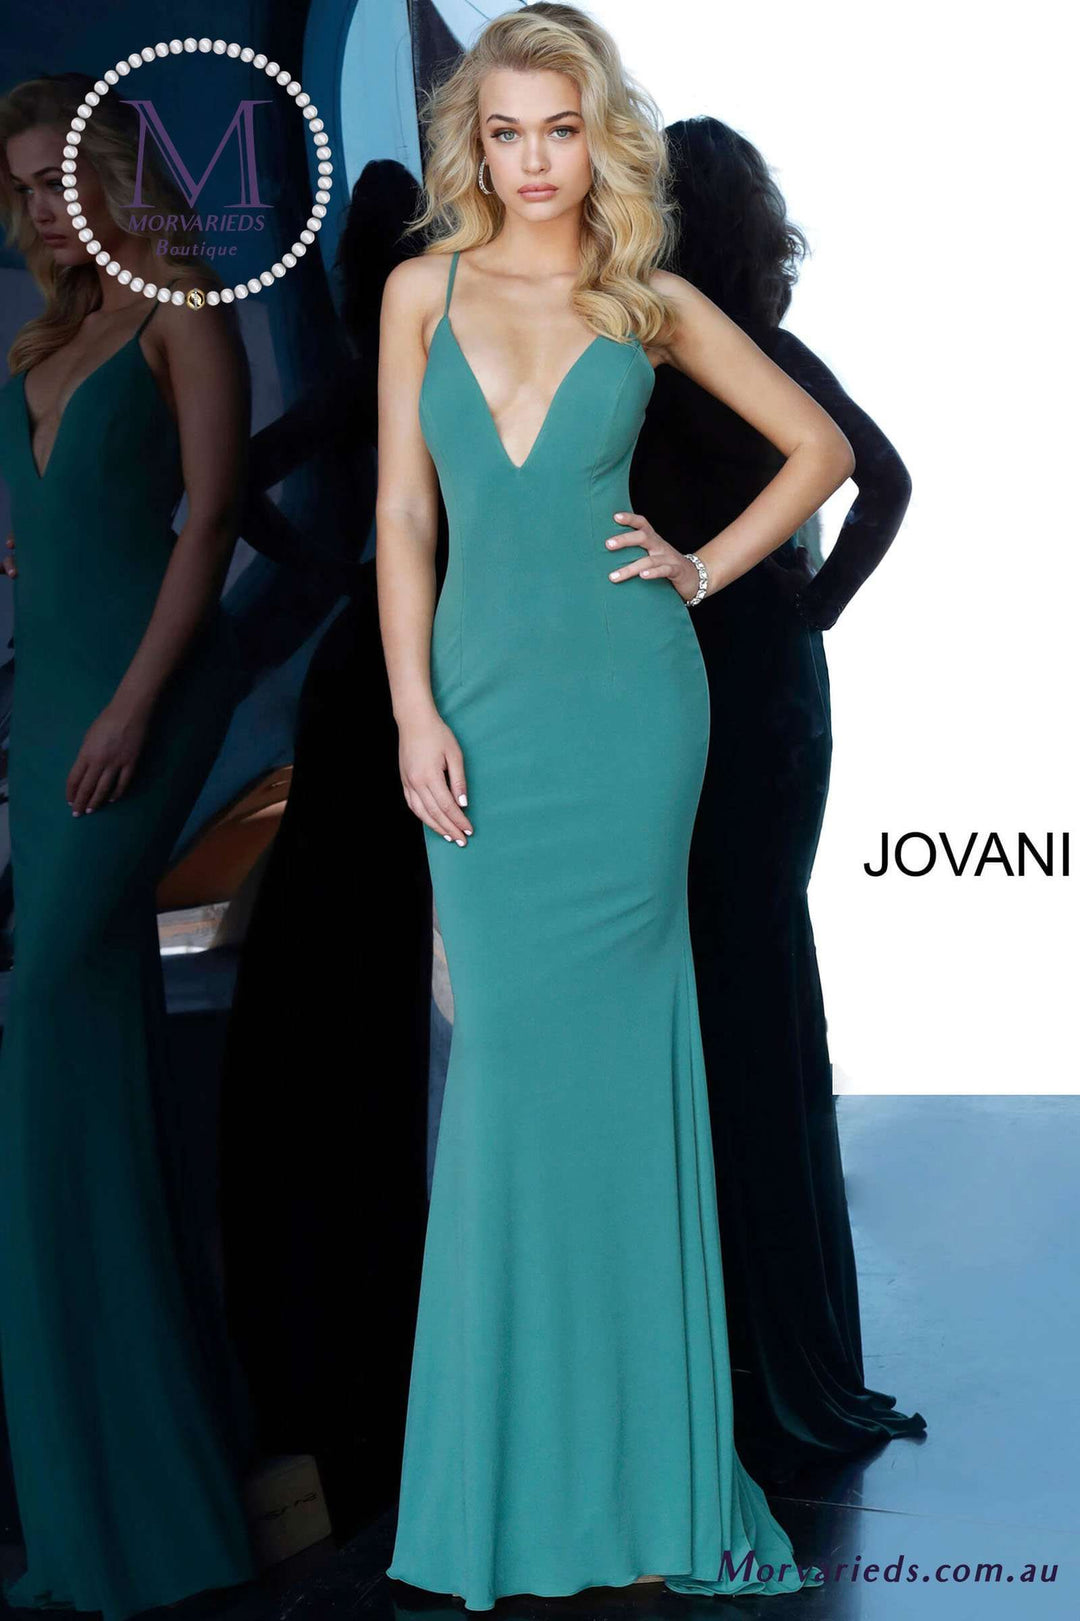 V Neckline Fitted Formal Prom Dress Jovani 00512 - Morvarieds Fashion